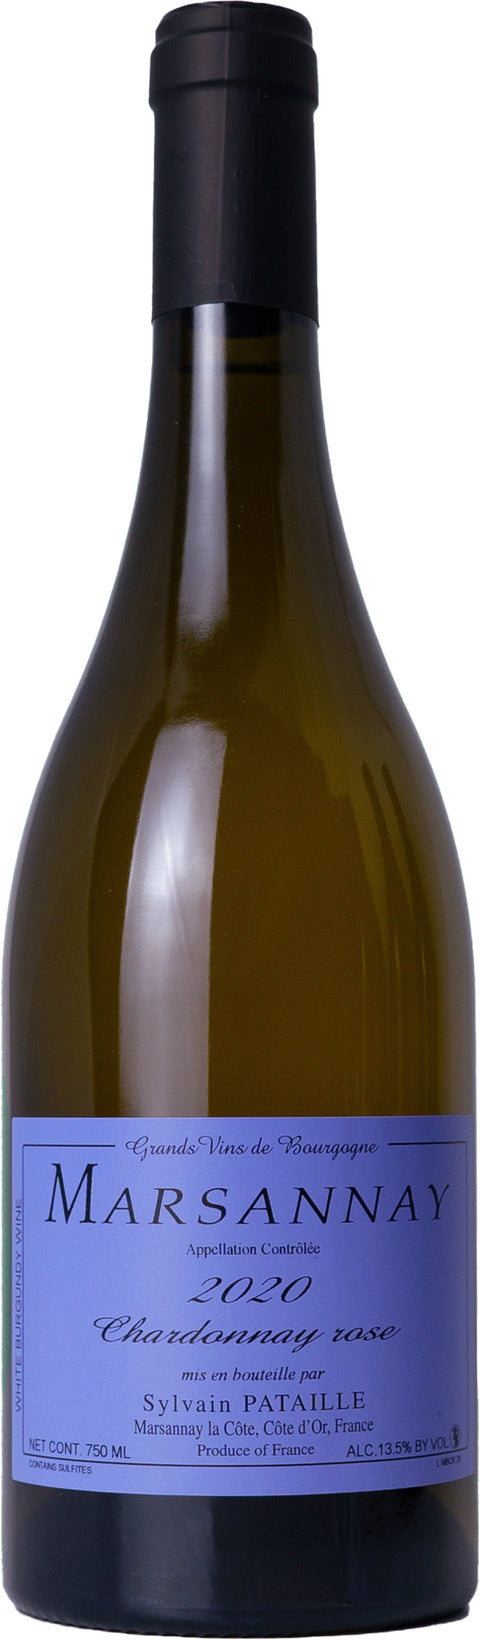 Marsannay - Chardonnay rose - Domaine Sylvain Pataille - 2020